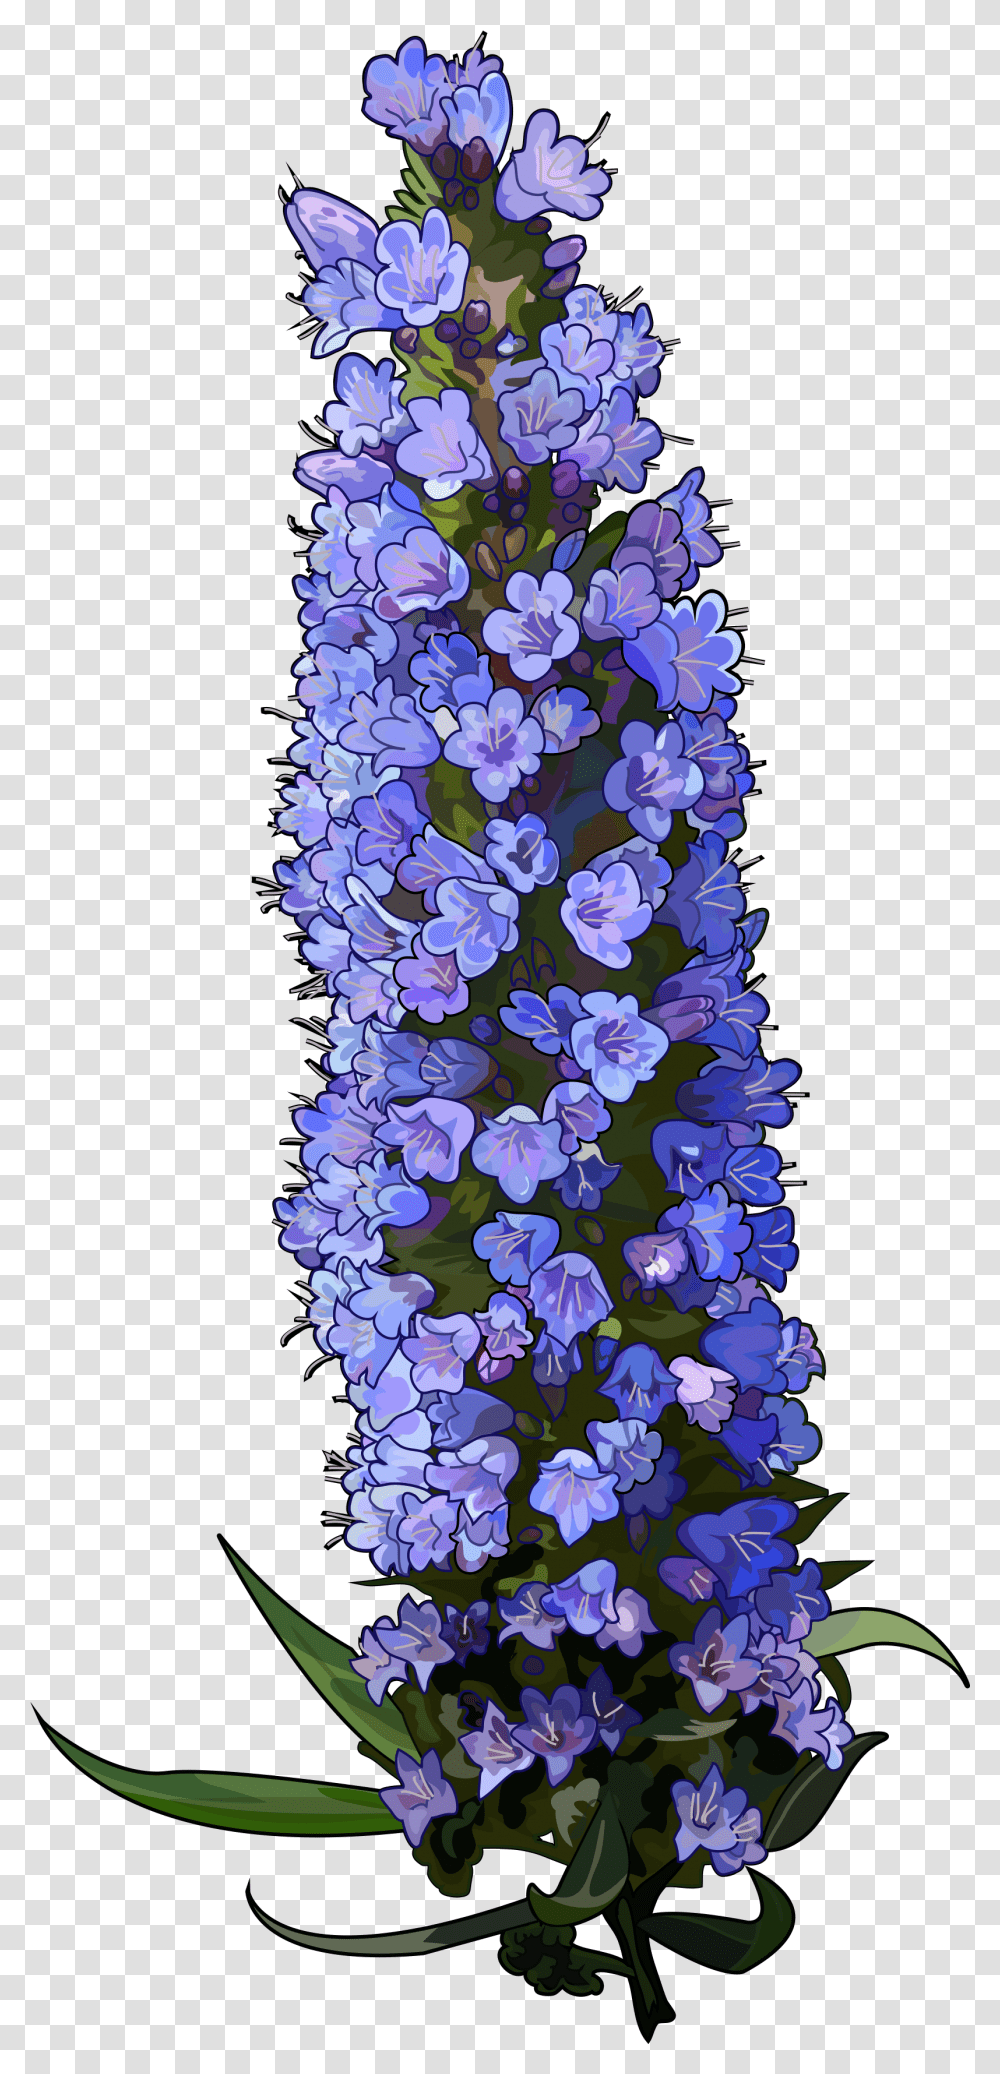 Texas Bluebonnet Download Bluebonnet, Plant, Flower, Tree, Flower Arrangement Transparent Png